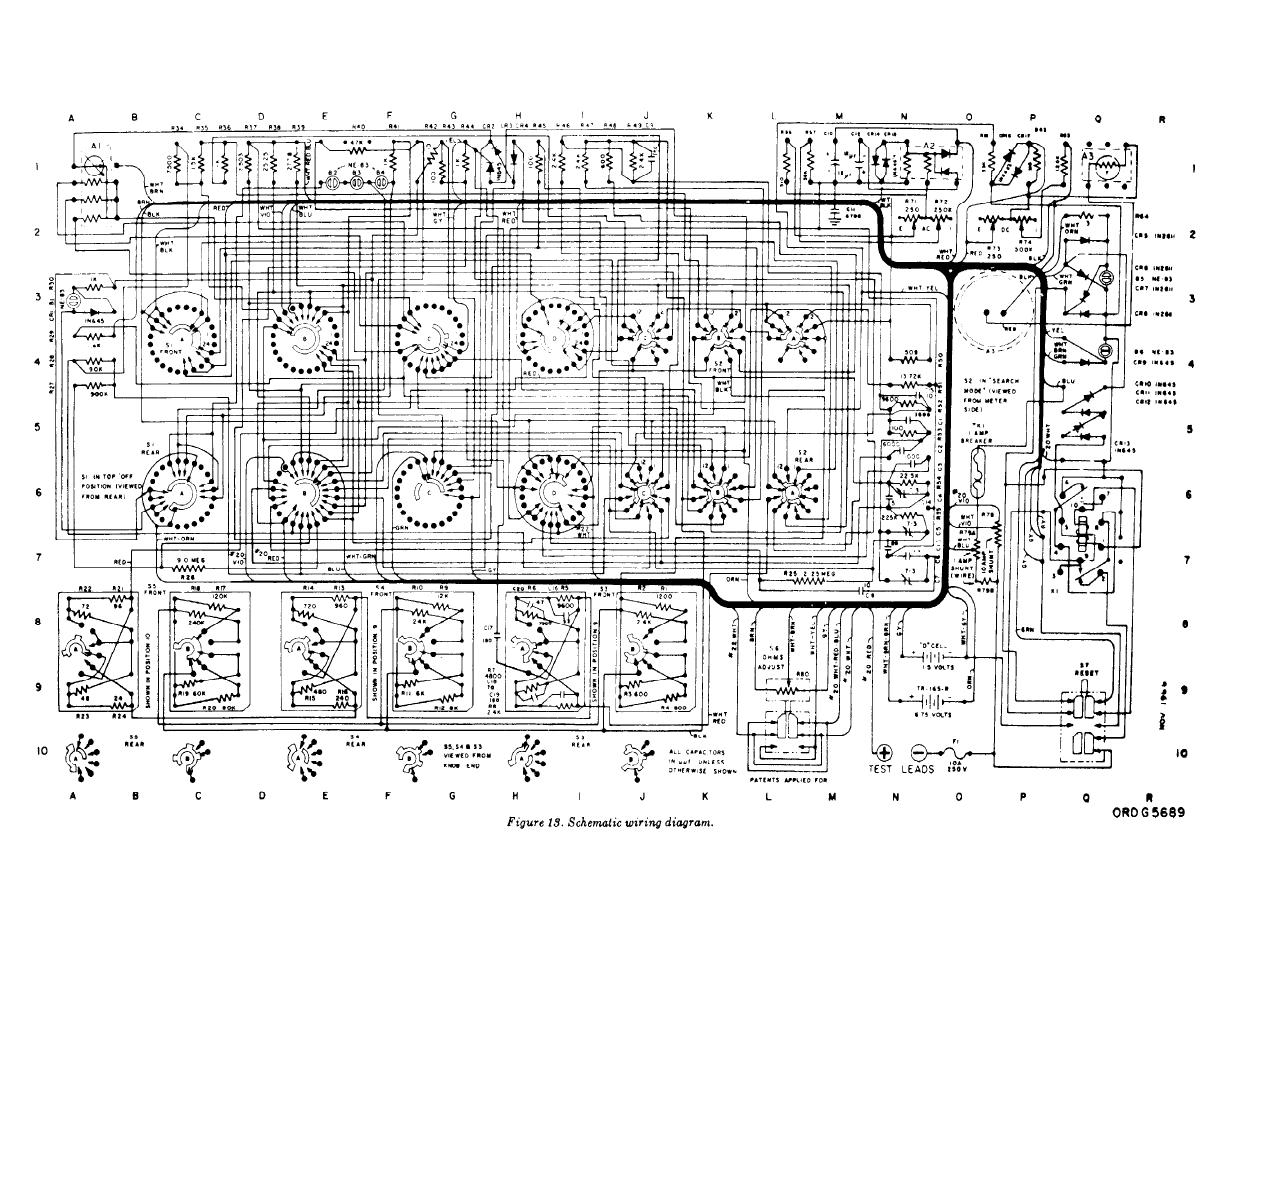 Figure 13. Schematic wiring diagram